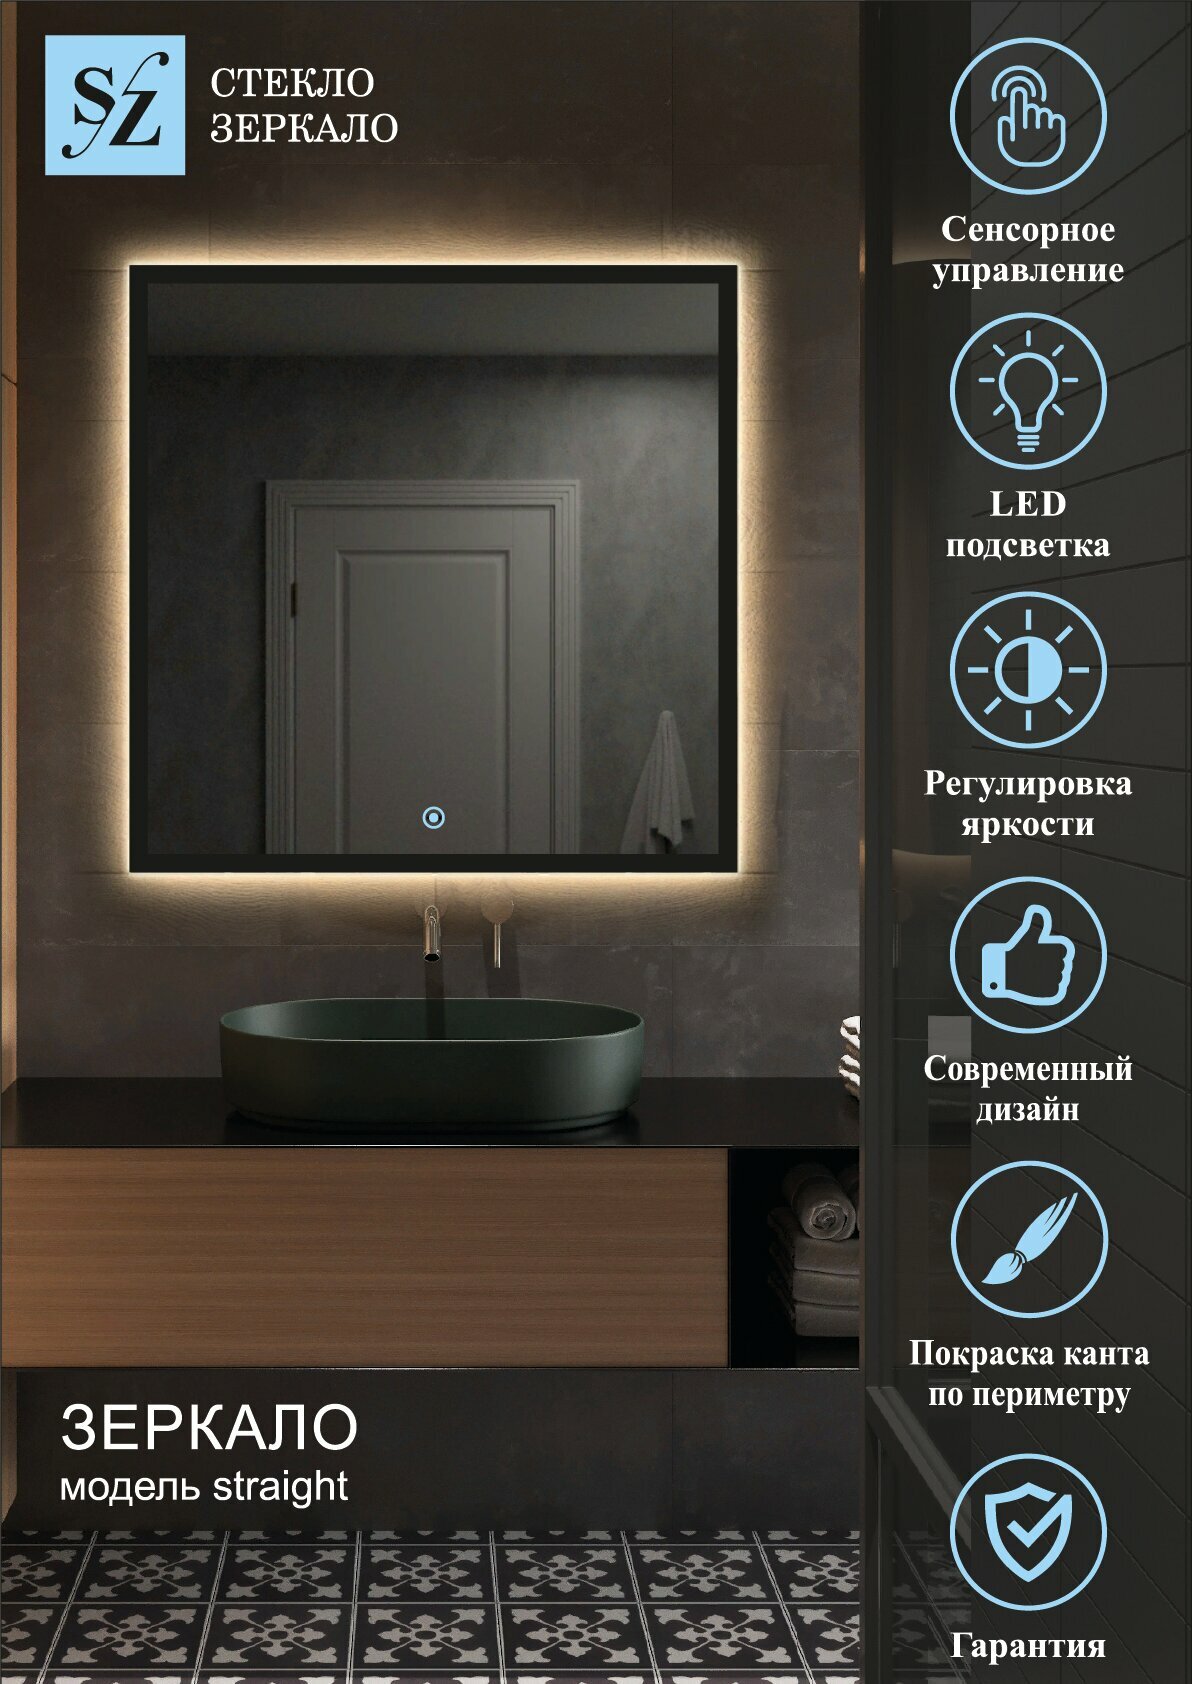 Зеркало интерьерное с подсветкой парящее прямоугольное 60*120см для ванной сенсорное управление + покраска по периметру - фотография № 1